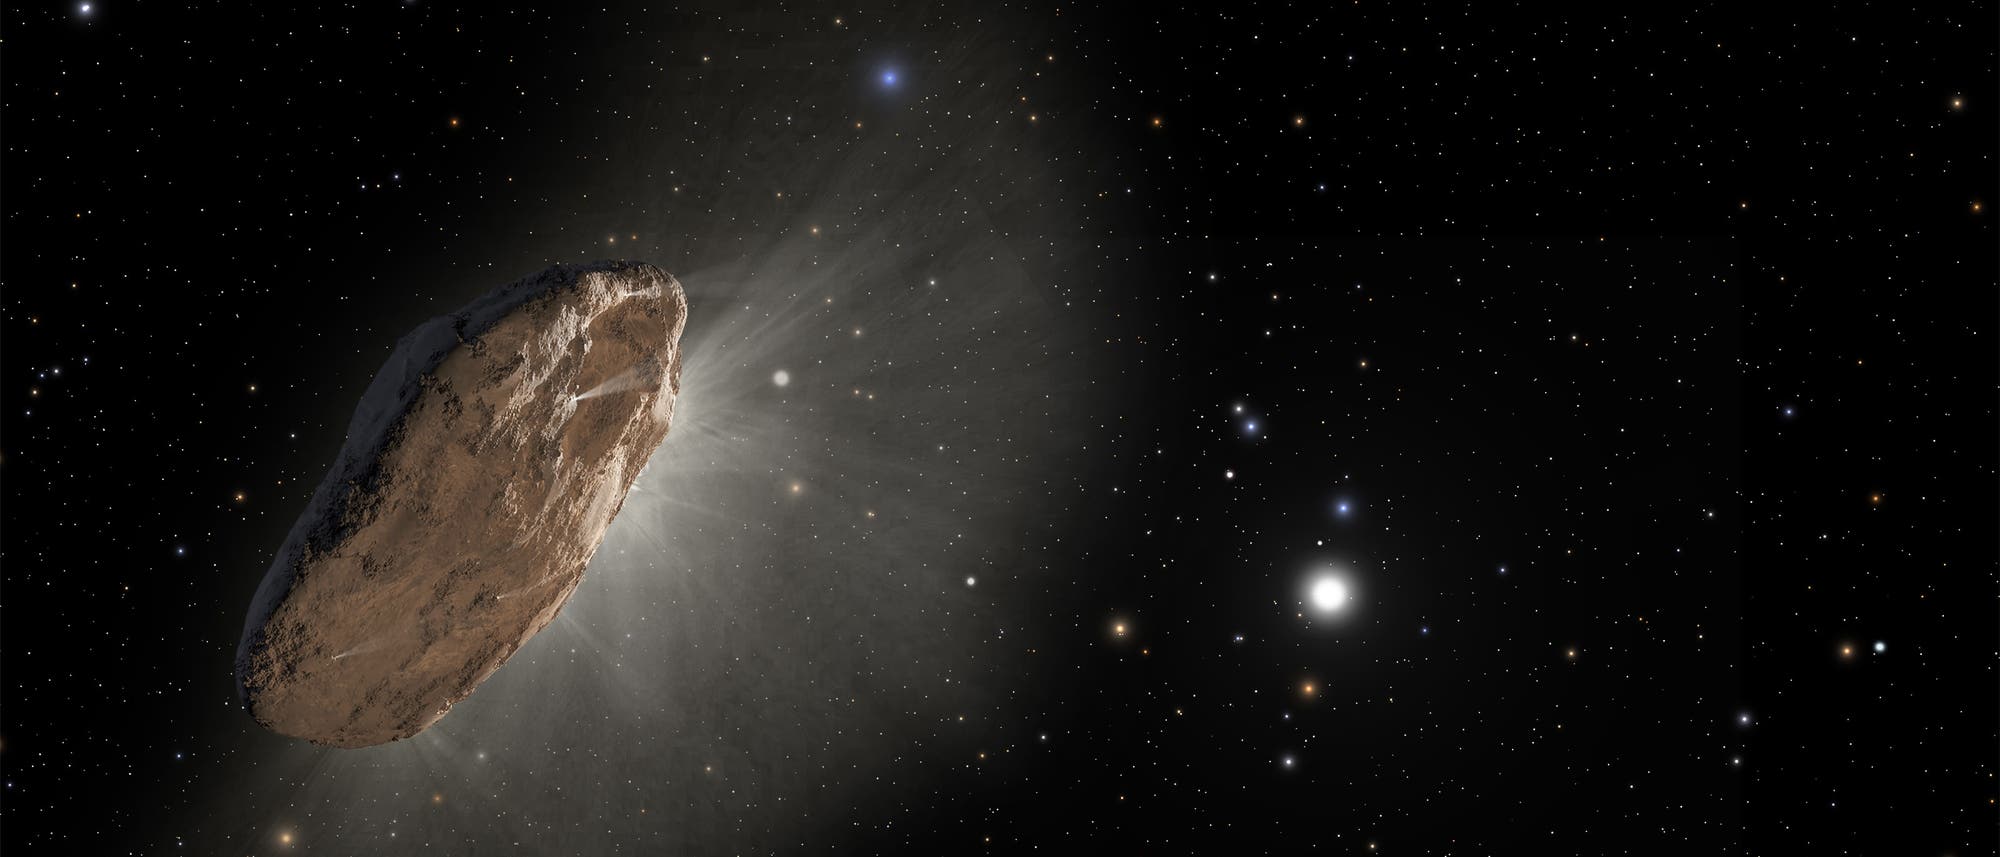 Der interstellare Besucher ist ein Komet (künstlerische Darstellung)